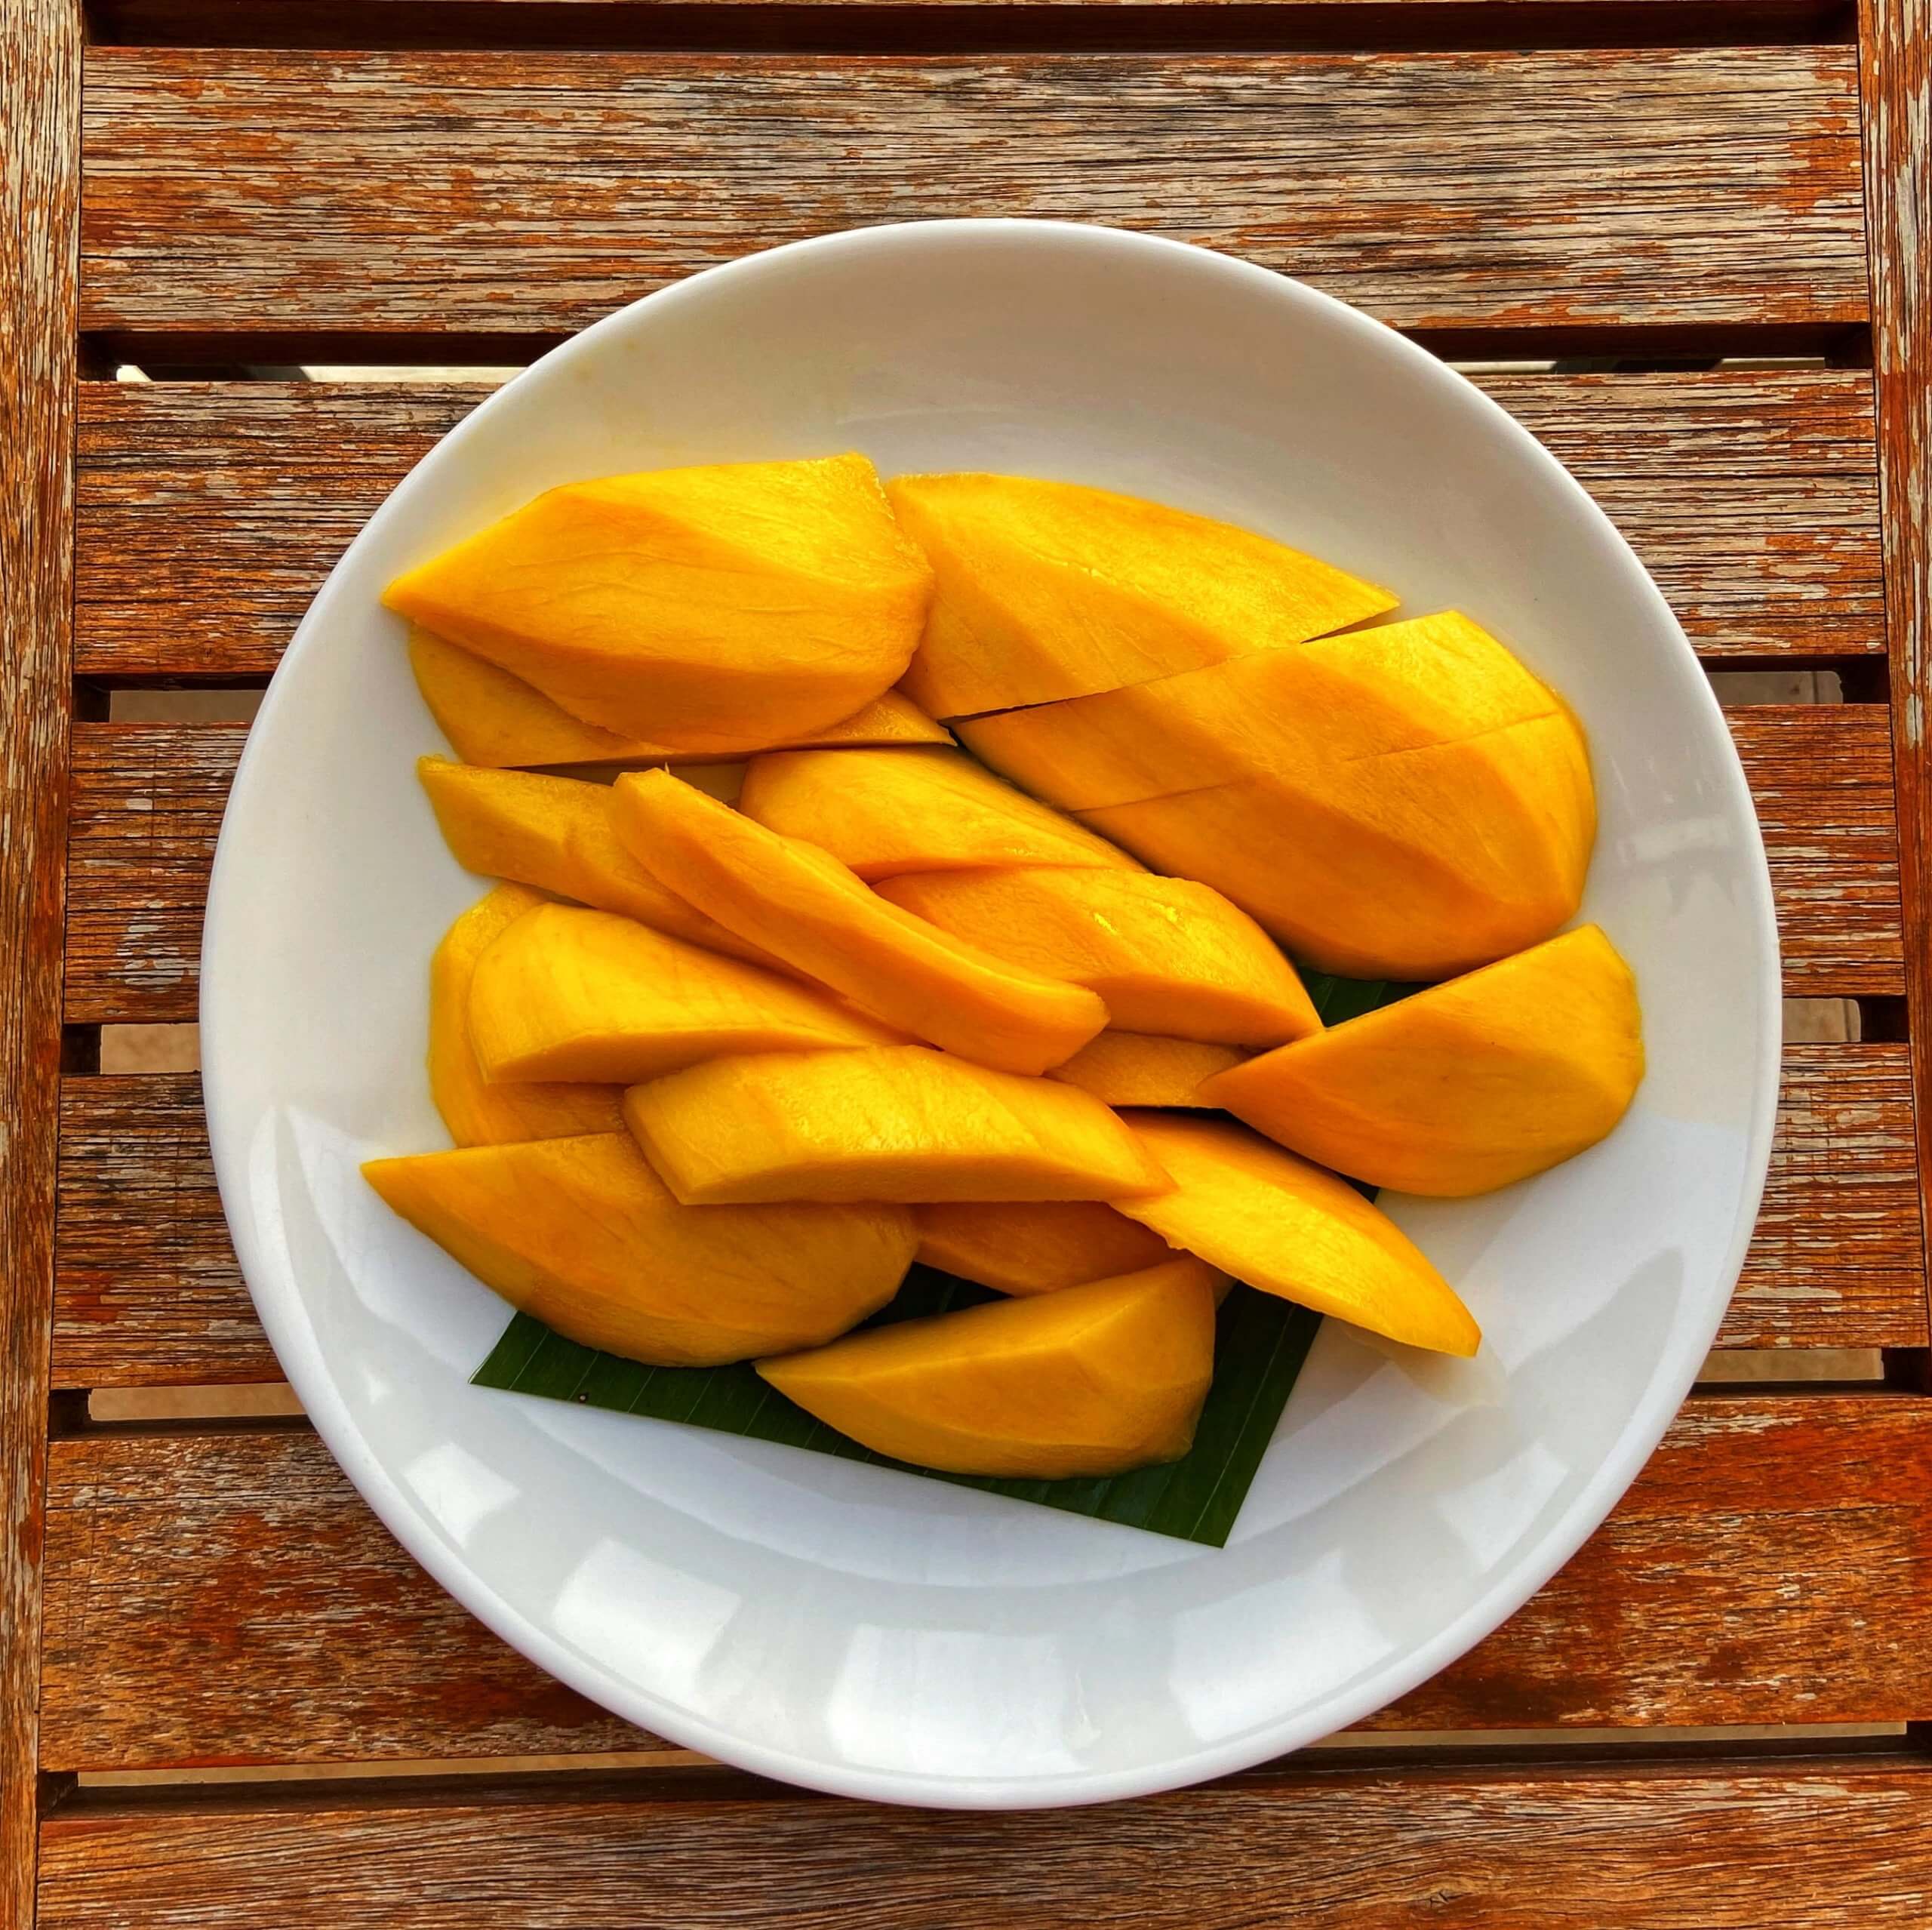 Игра красок и вкусов: фигуры из манго создают радость и гастрономический опыт